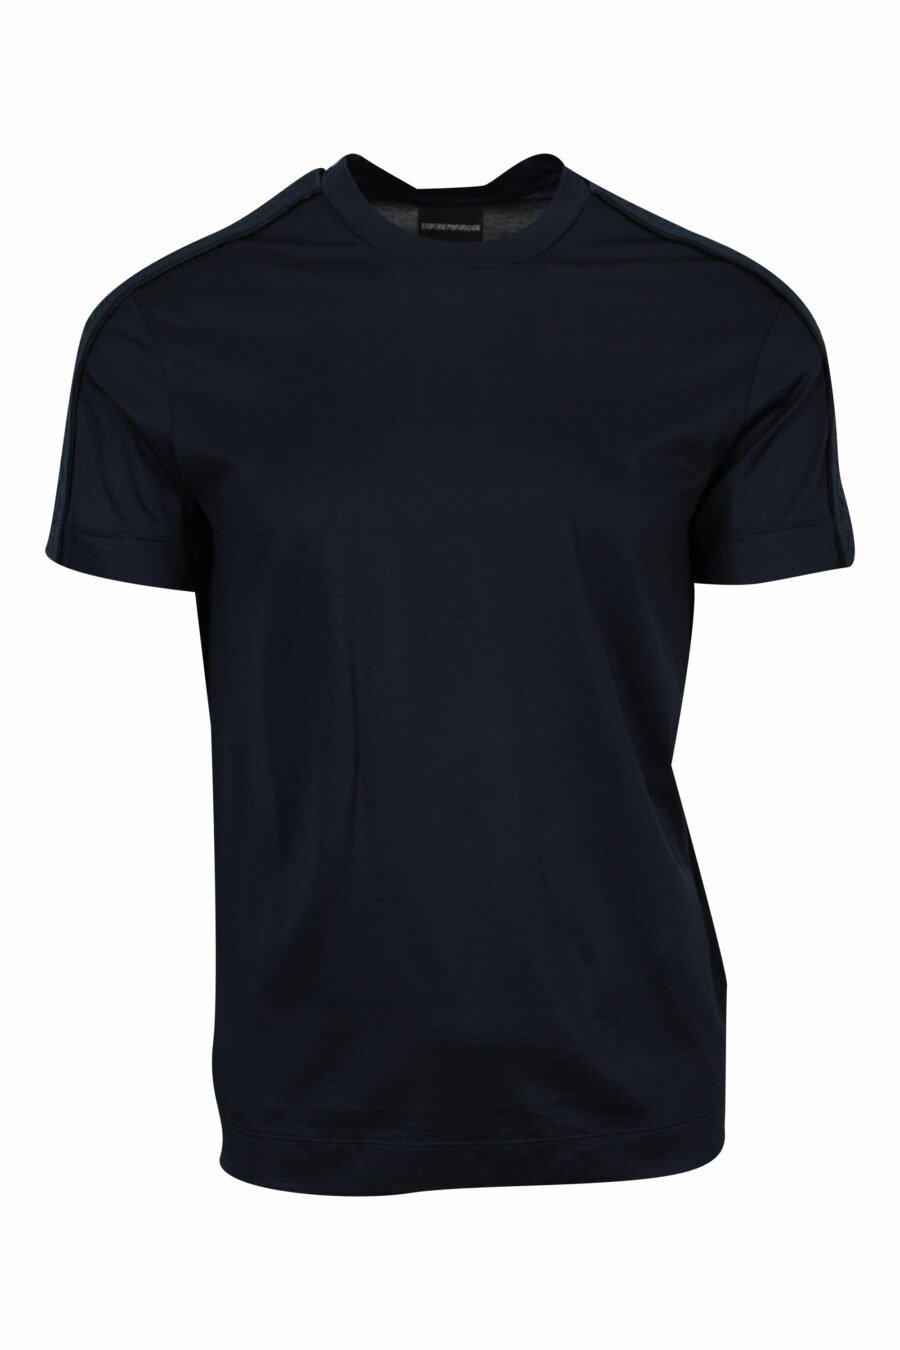 Camiseta azul oscuro con logo en hombros monocromático - 8058947986835